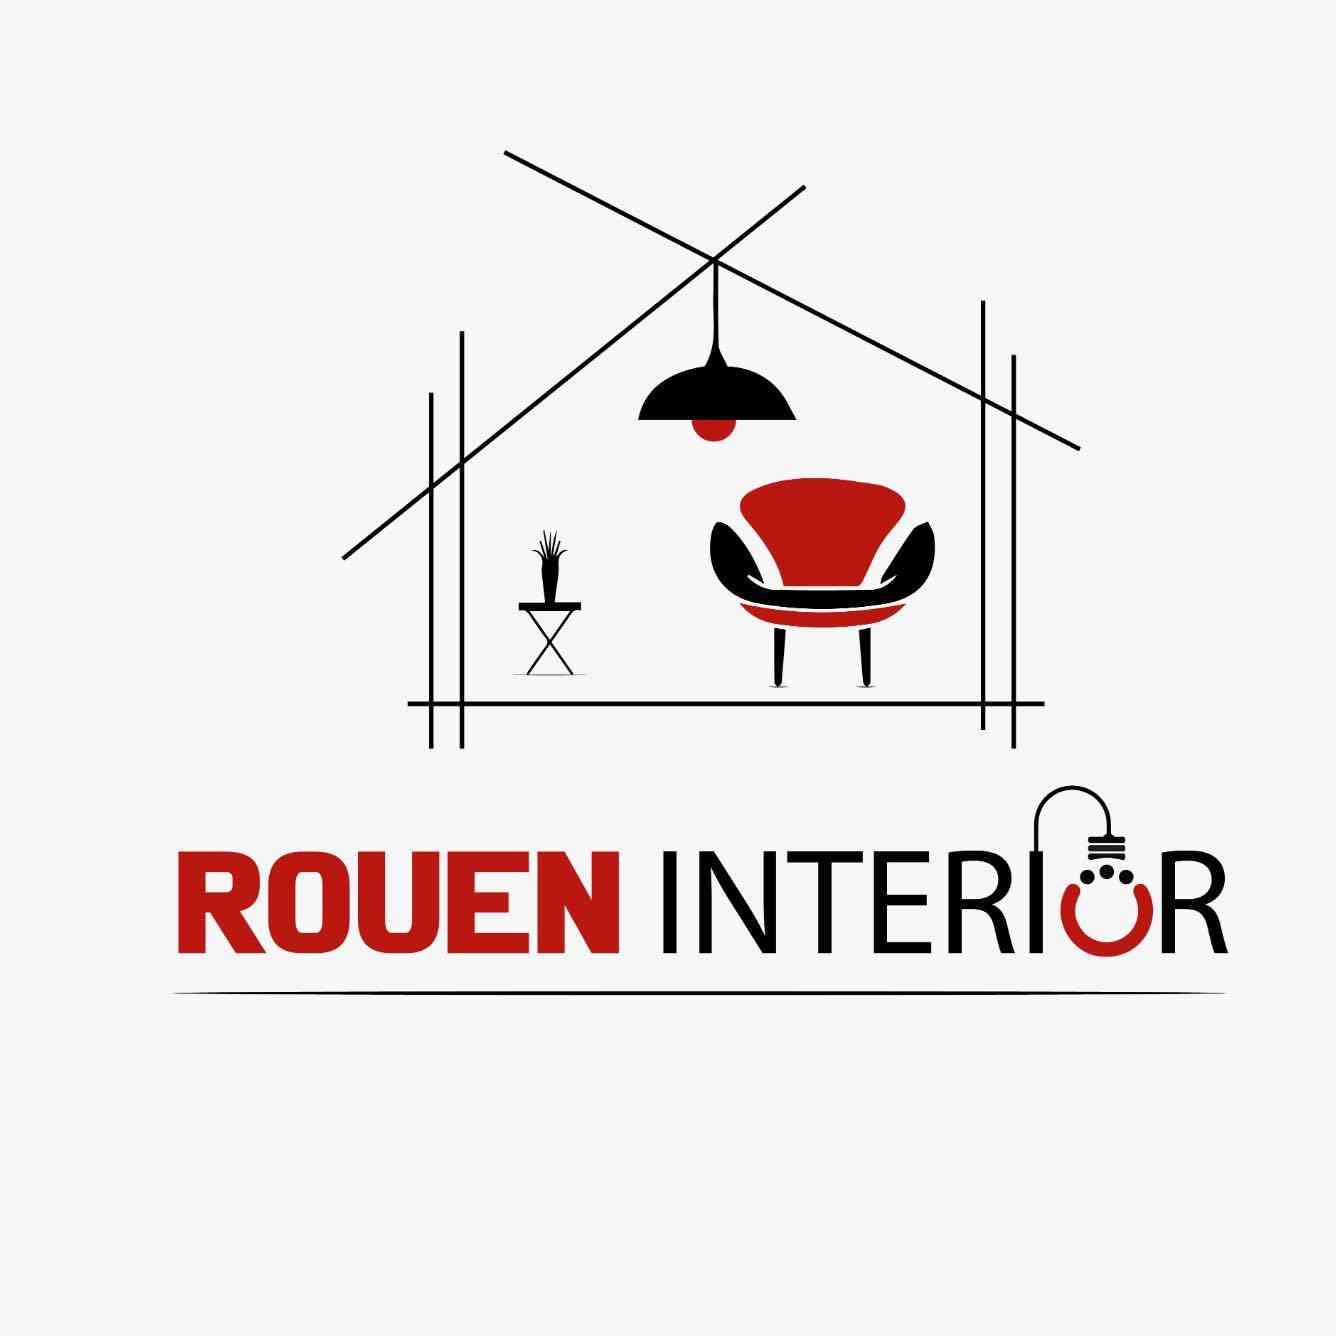 The Rouen Interiors